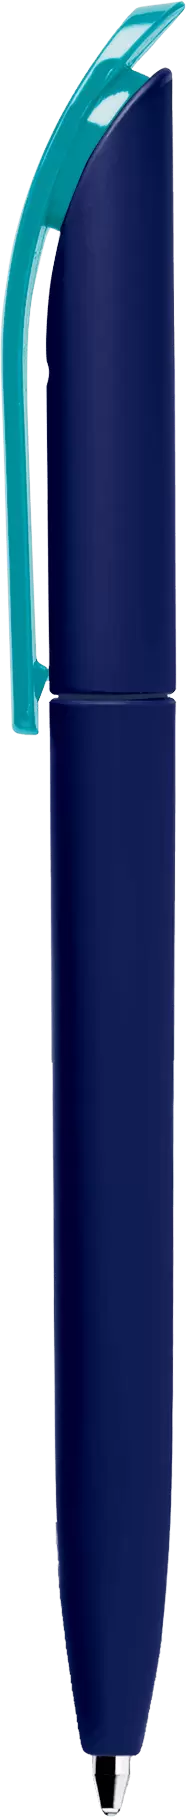 Ручка VIVALDI SOFT MIX Темно-синяя с бирюзовым 1333-14-16